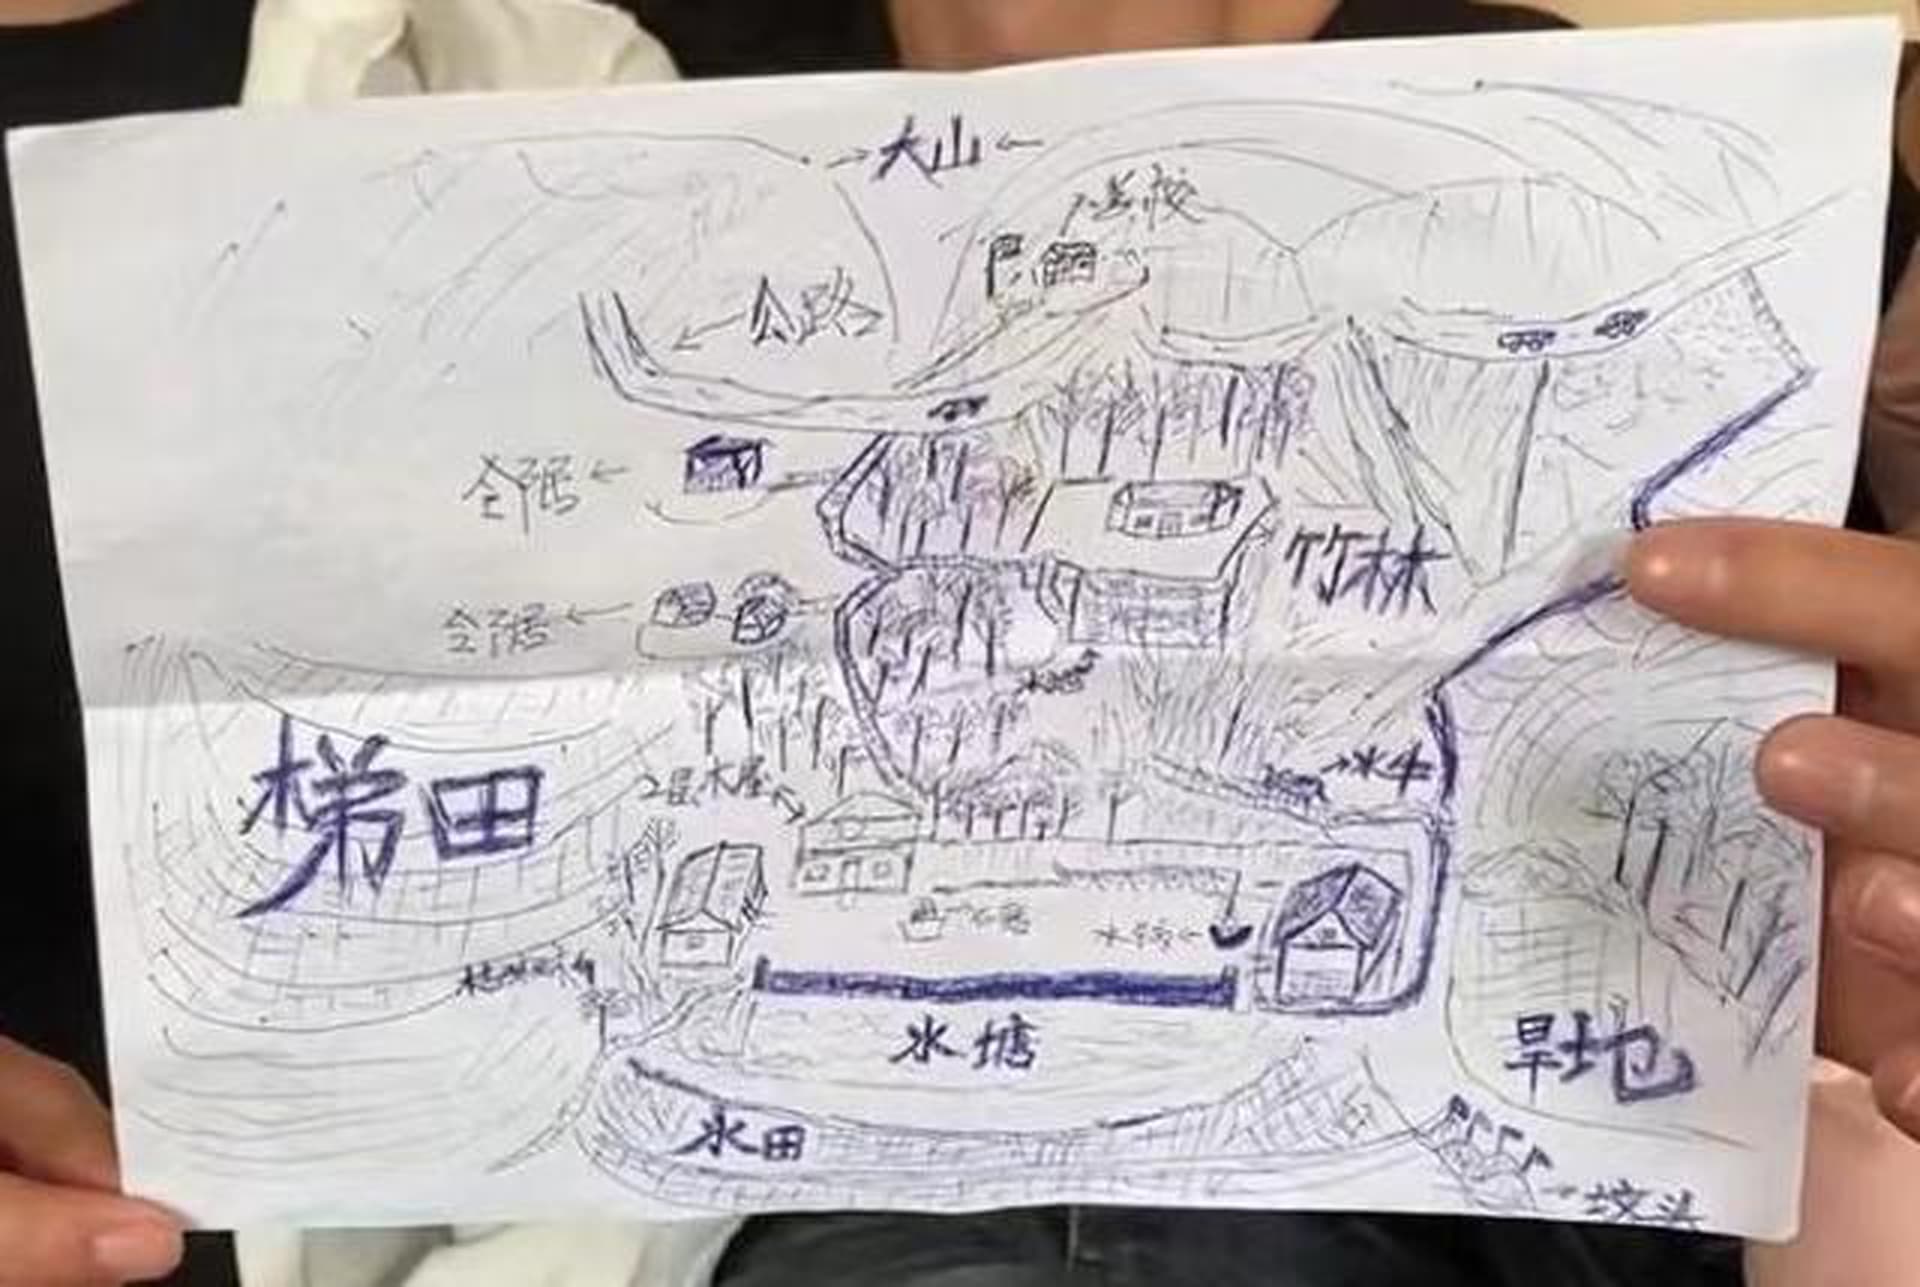 بفضل ذاكرته.. صيني اختُطف وهو طفل يعود لأهله بعد رسمه خريطة قريته